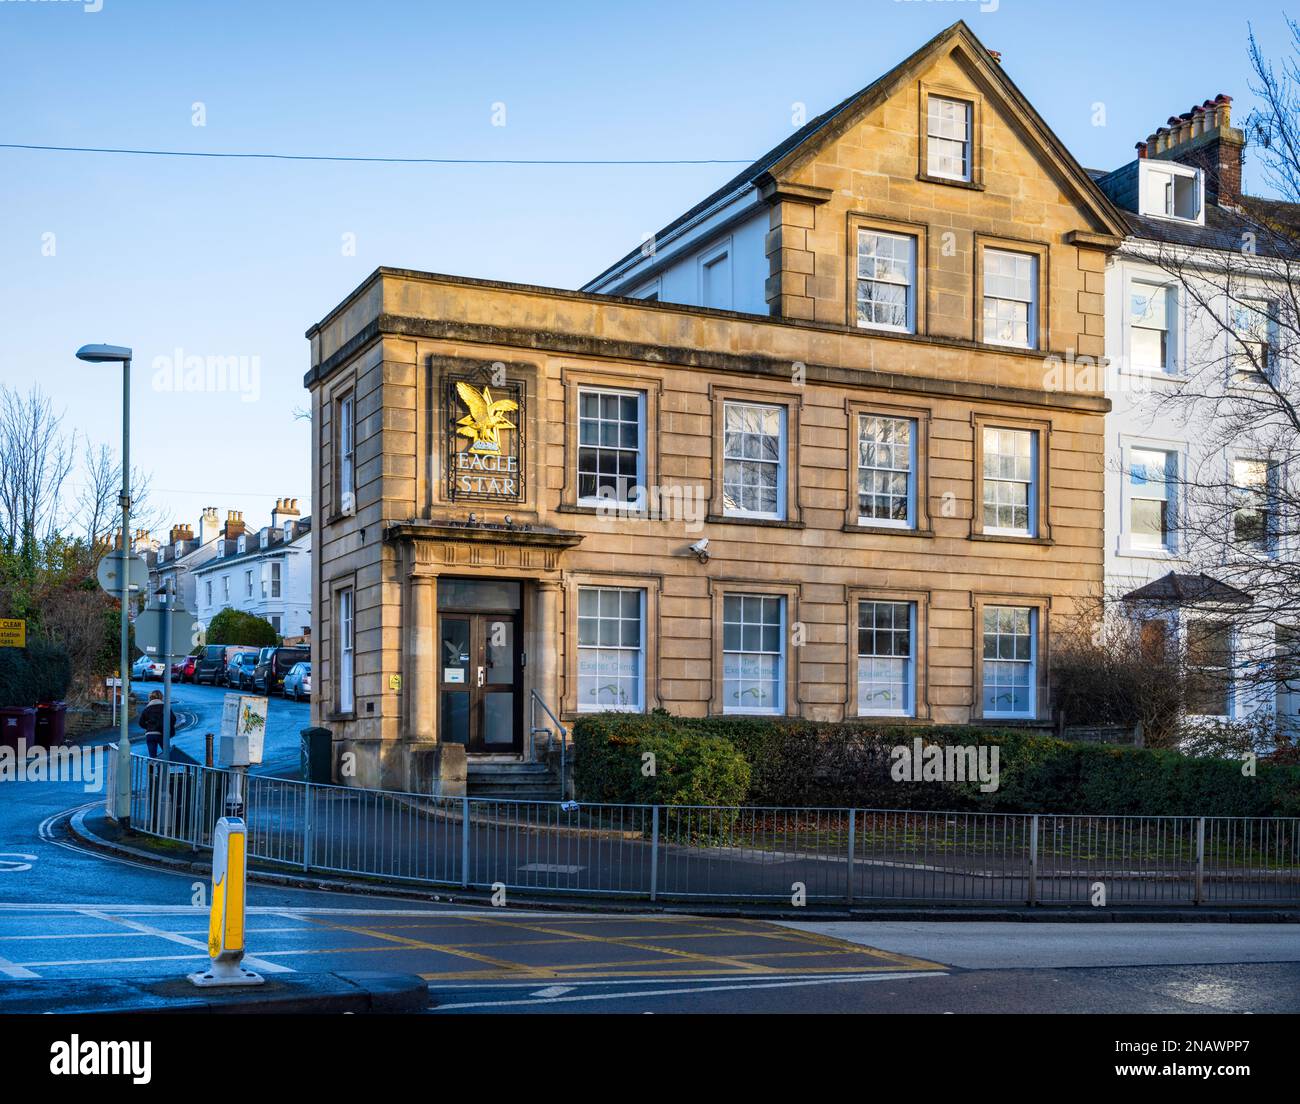 Anciens bureaux de The Eagle Star Insurance Company plc à New North Road, Exeter, Devon, Royaume-Uni. Aujourd'hui, la clinique Exeter, centre de podologie. Banque D'Images